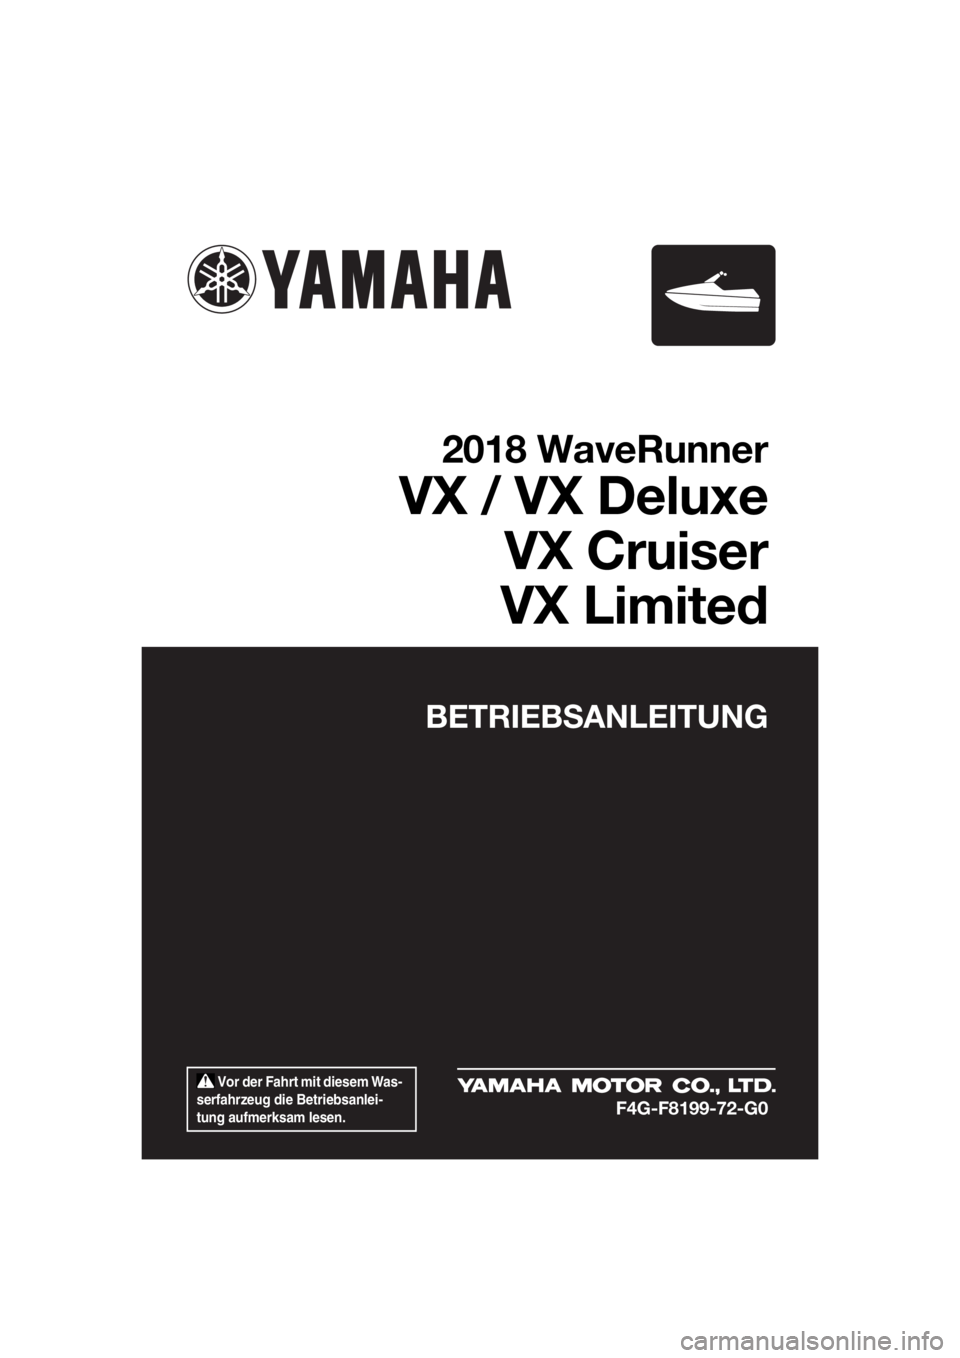 YAMAHA VX DELUXE 2018  Betriebsanleitungen (in German)  Vor der Fahrt mit diesem Was-
serfahrzeug die Betriebsanlei-
tung aufmerksam lesen.
BETRIEBSANLEITUNG
2018 WaveRunner
VX / VX Deluxe
VX Cruiser
VX Limited
F4G-F8199-72-G0
UF4G72G0.book  Page 1  Frida